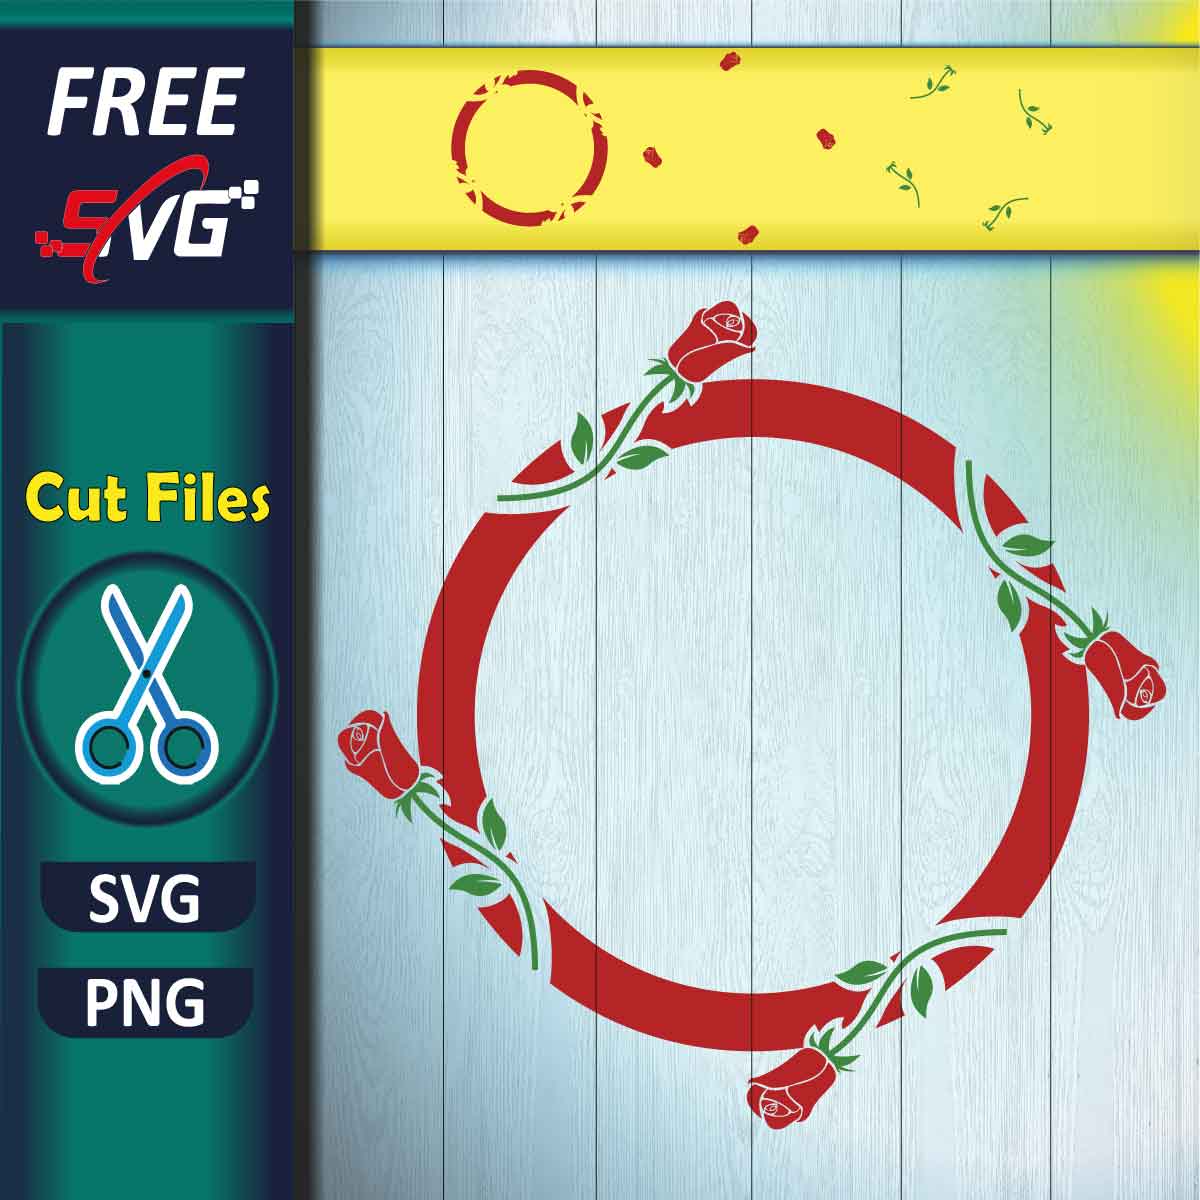 Rose Monogram SVG Free - Free SVG files